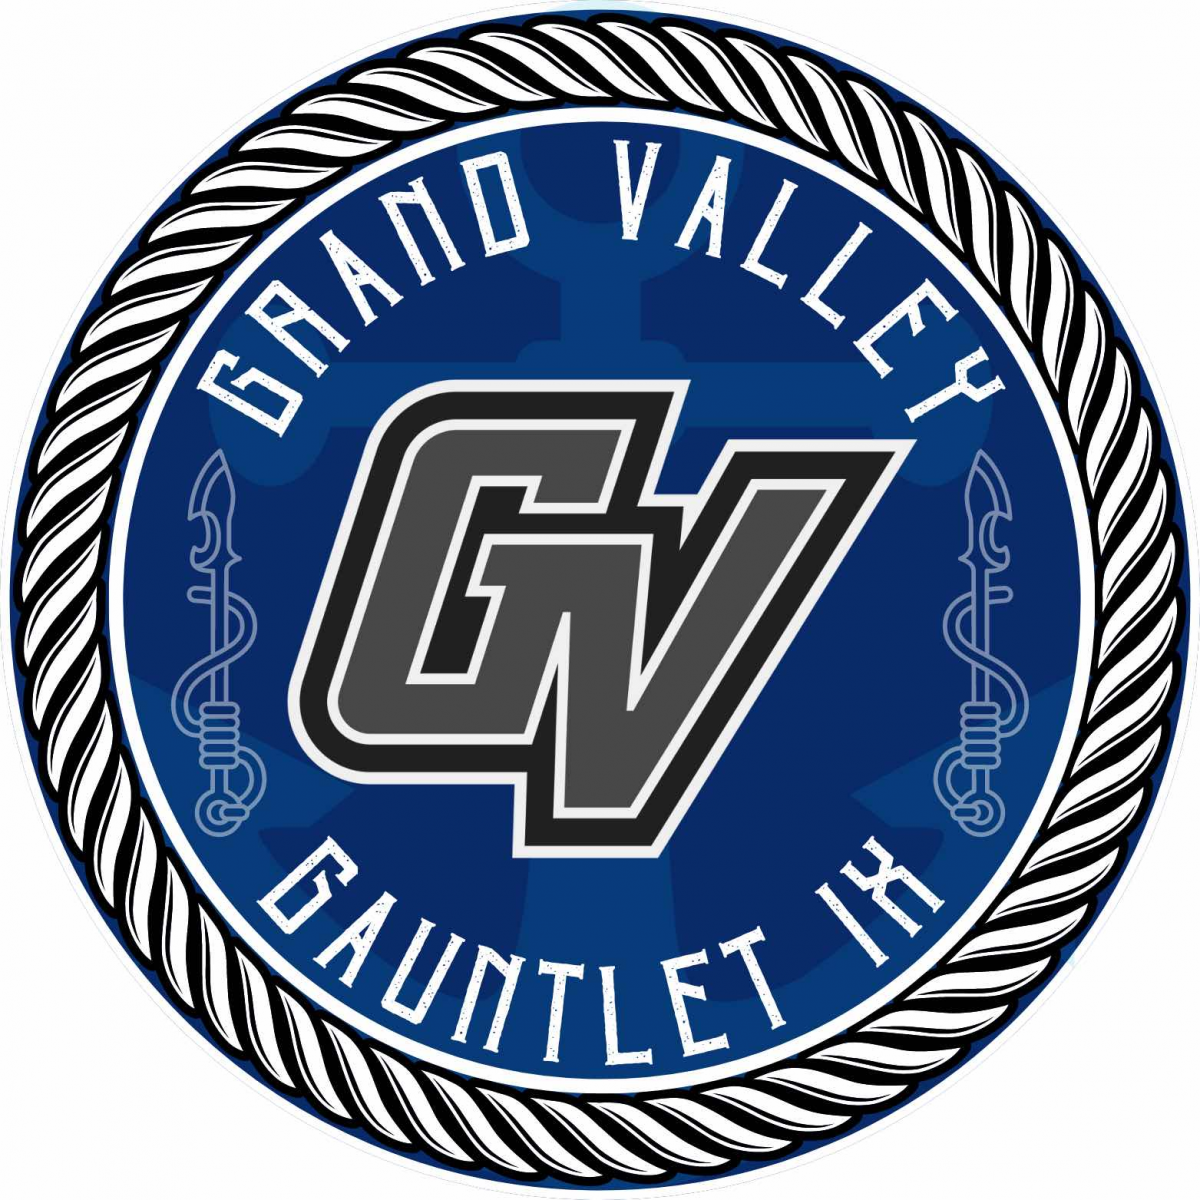 Grand Valley Gauntlet IX